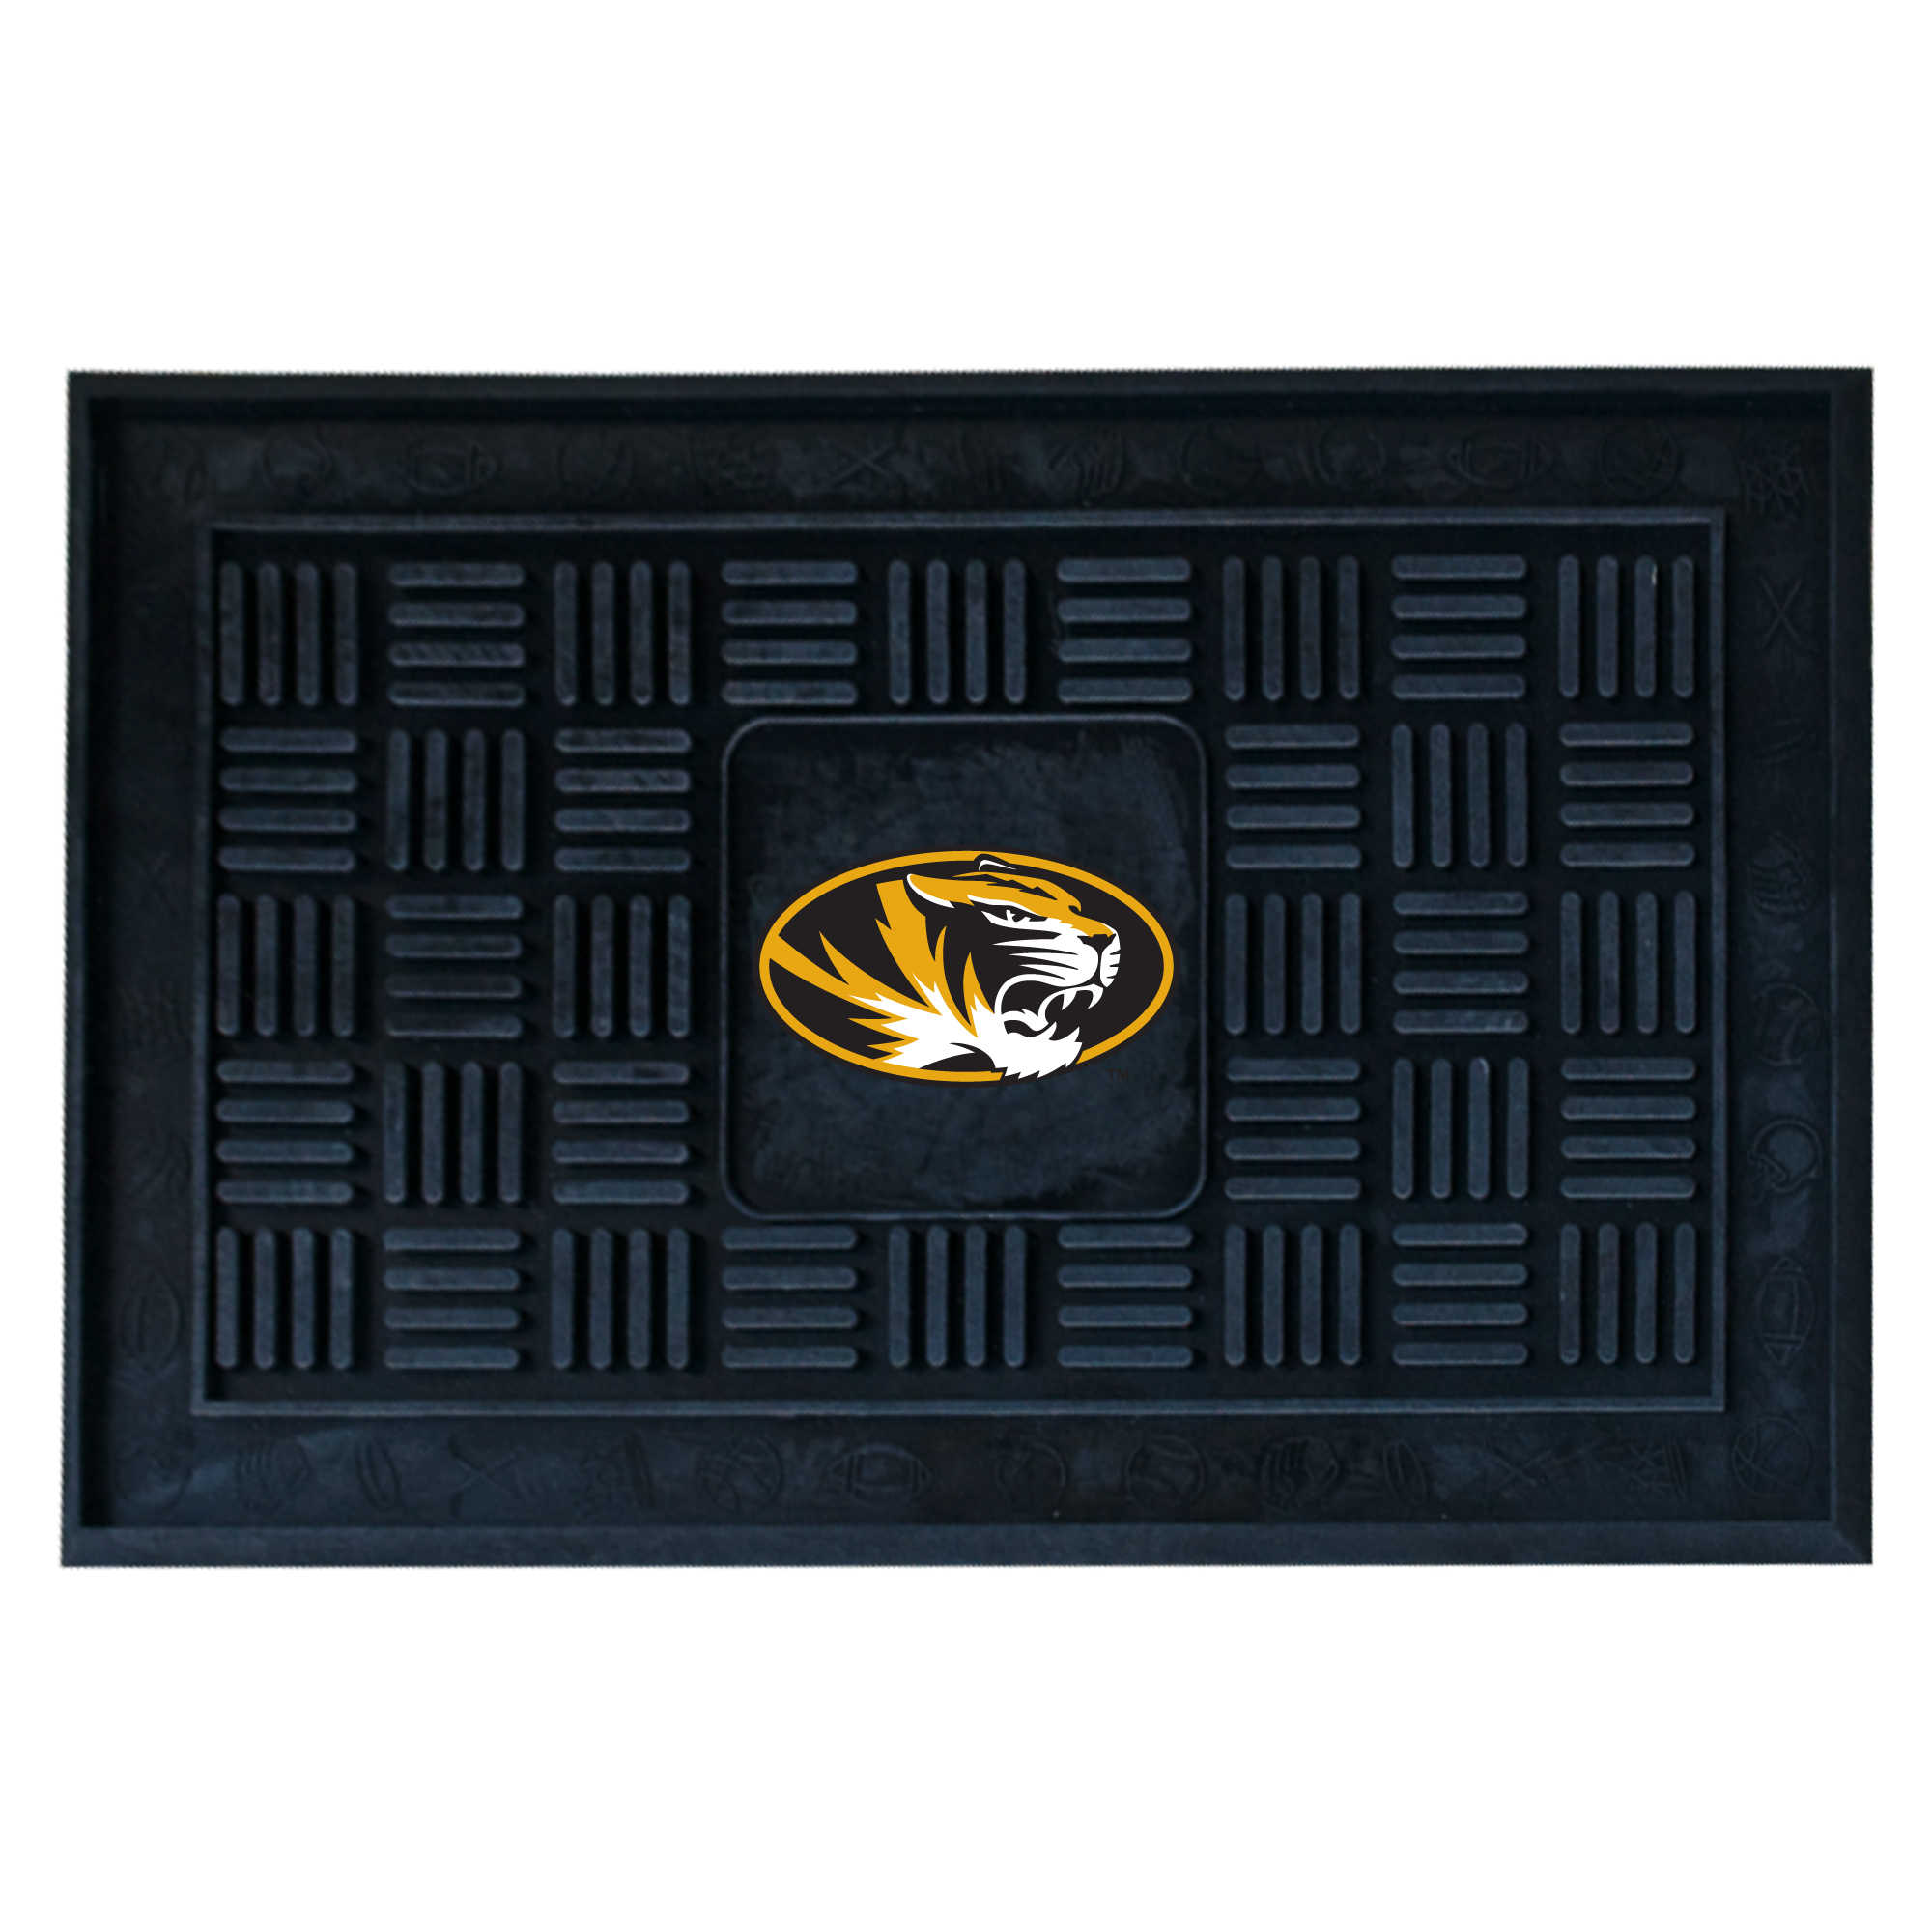 University of Missouri Medallion Door Mat 19" x 30"